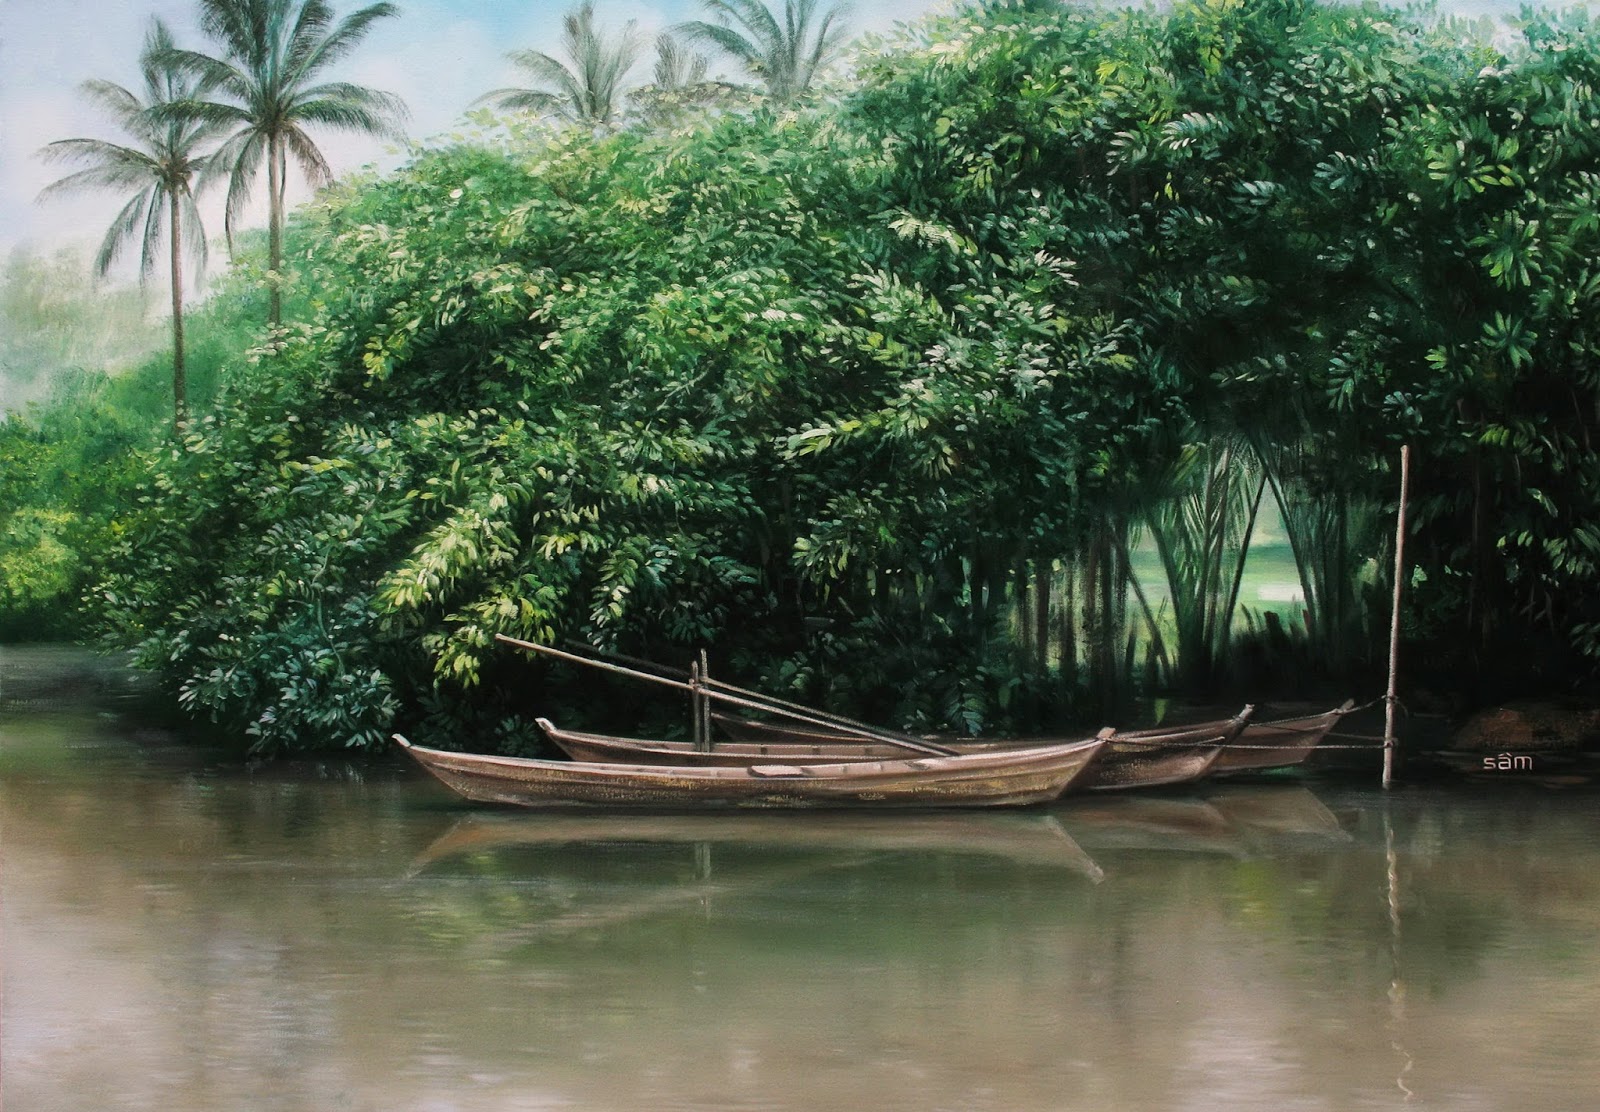 LÊ SÂM . vẽ tranh sơn dầu: tranh phong cảnh sông nước Miền Tây Nam Bộ. sơn  dầu Lê Sâm